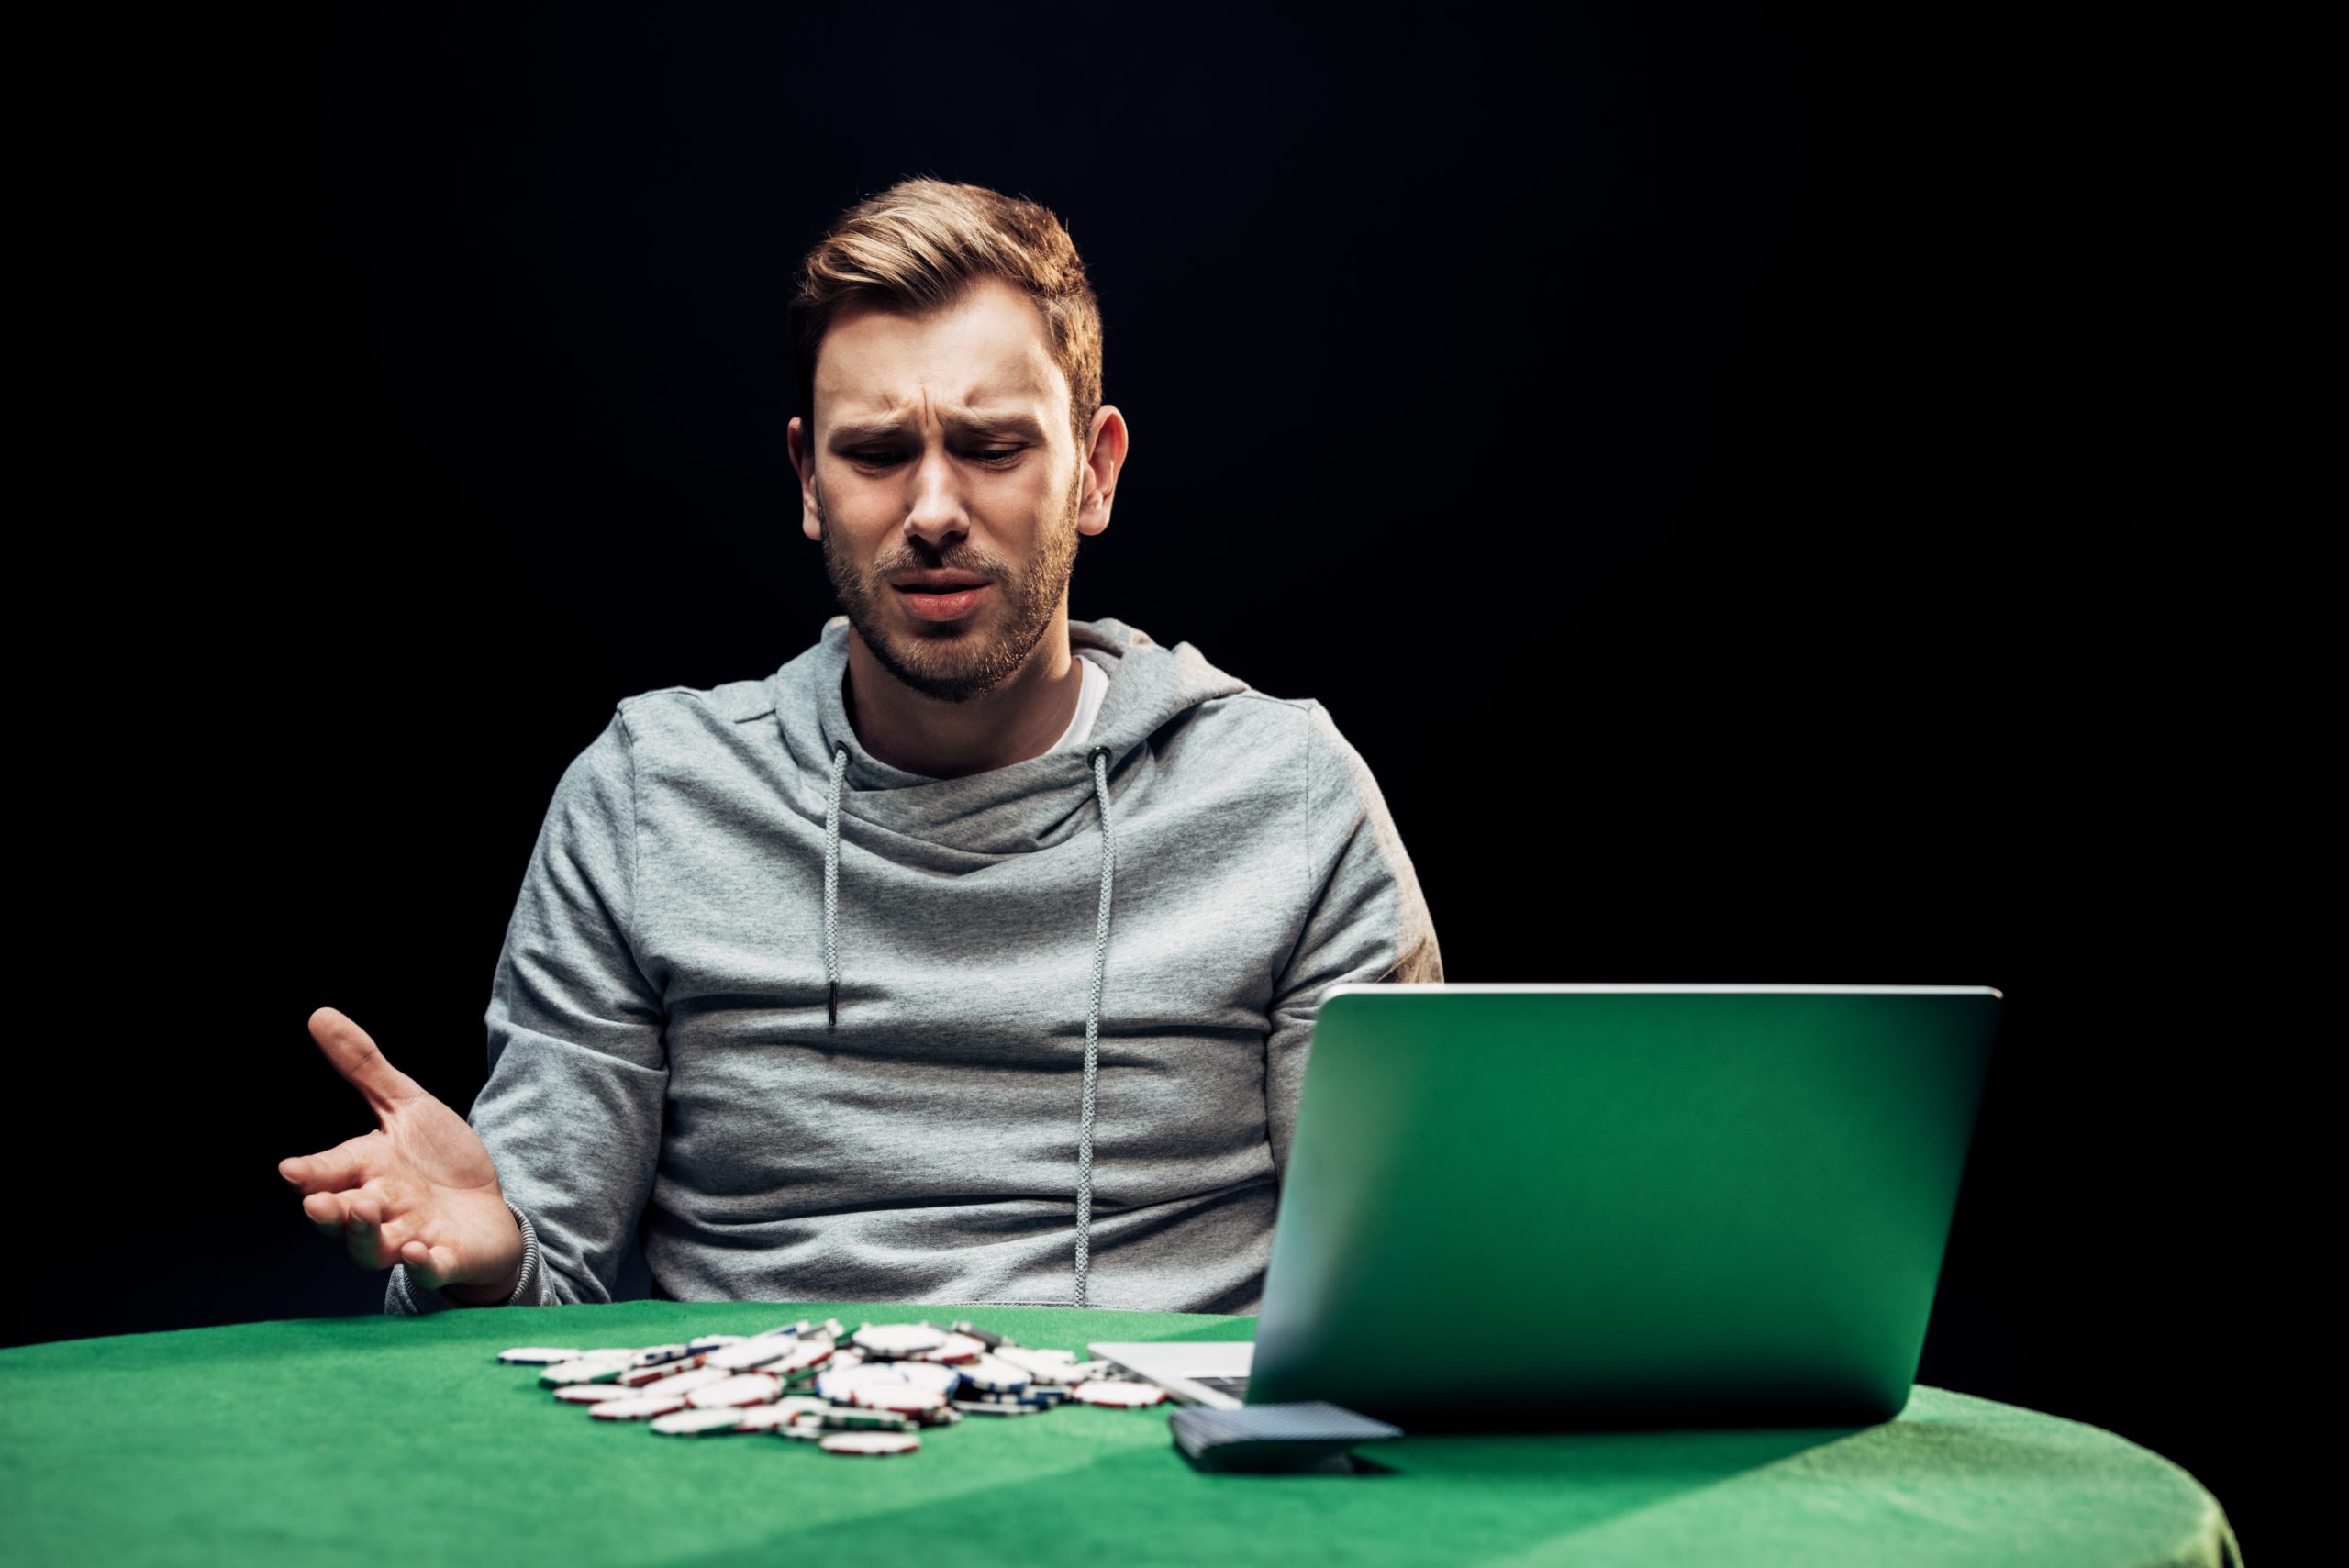 Bavia ťa online hazardné hry a chceš v nich odštartovať kariéru? Toto sú tri najväčšie nevýhody